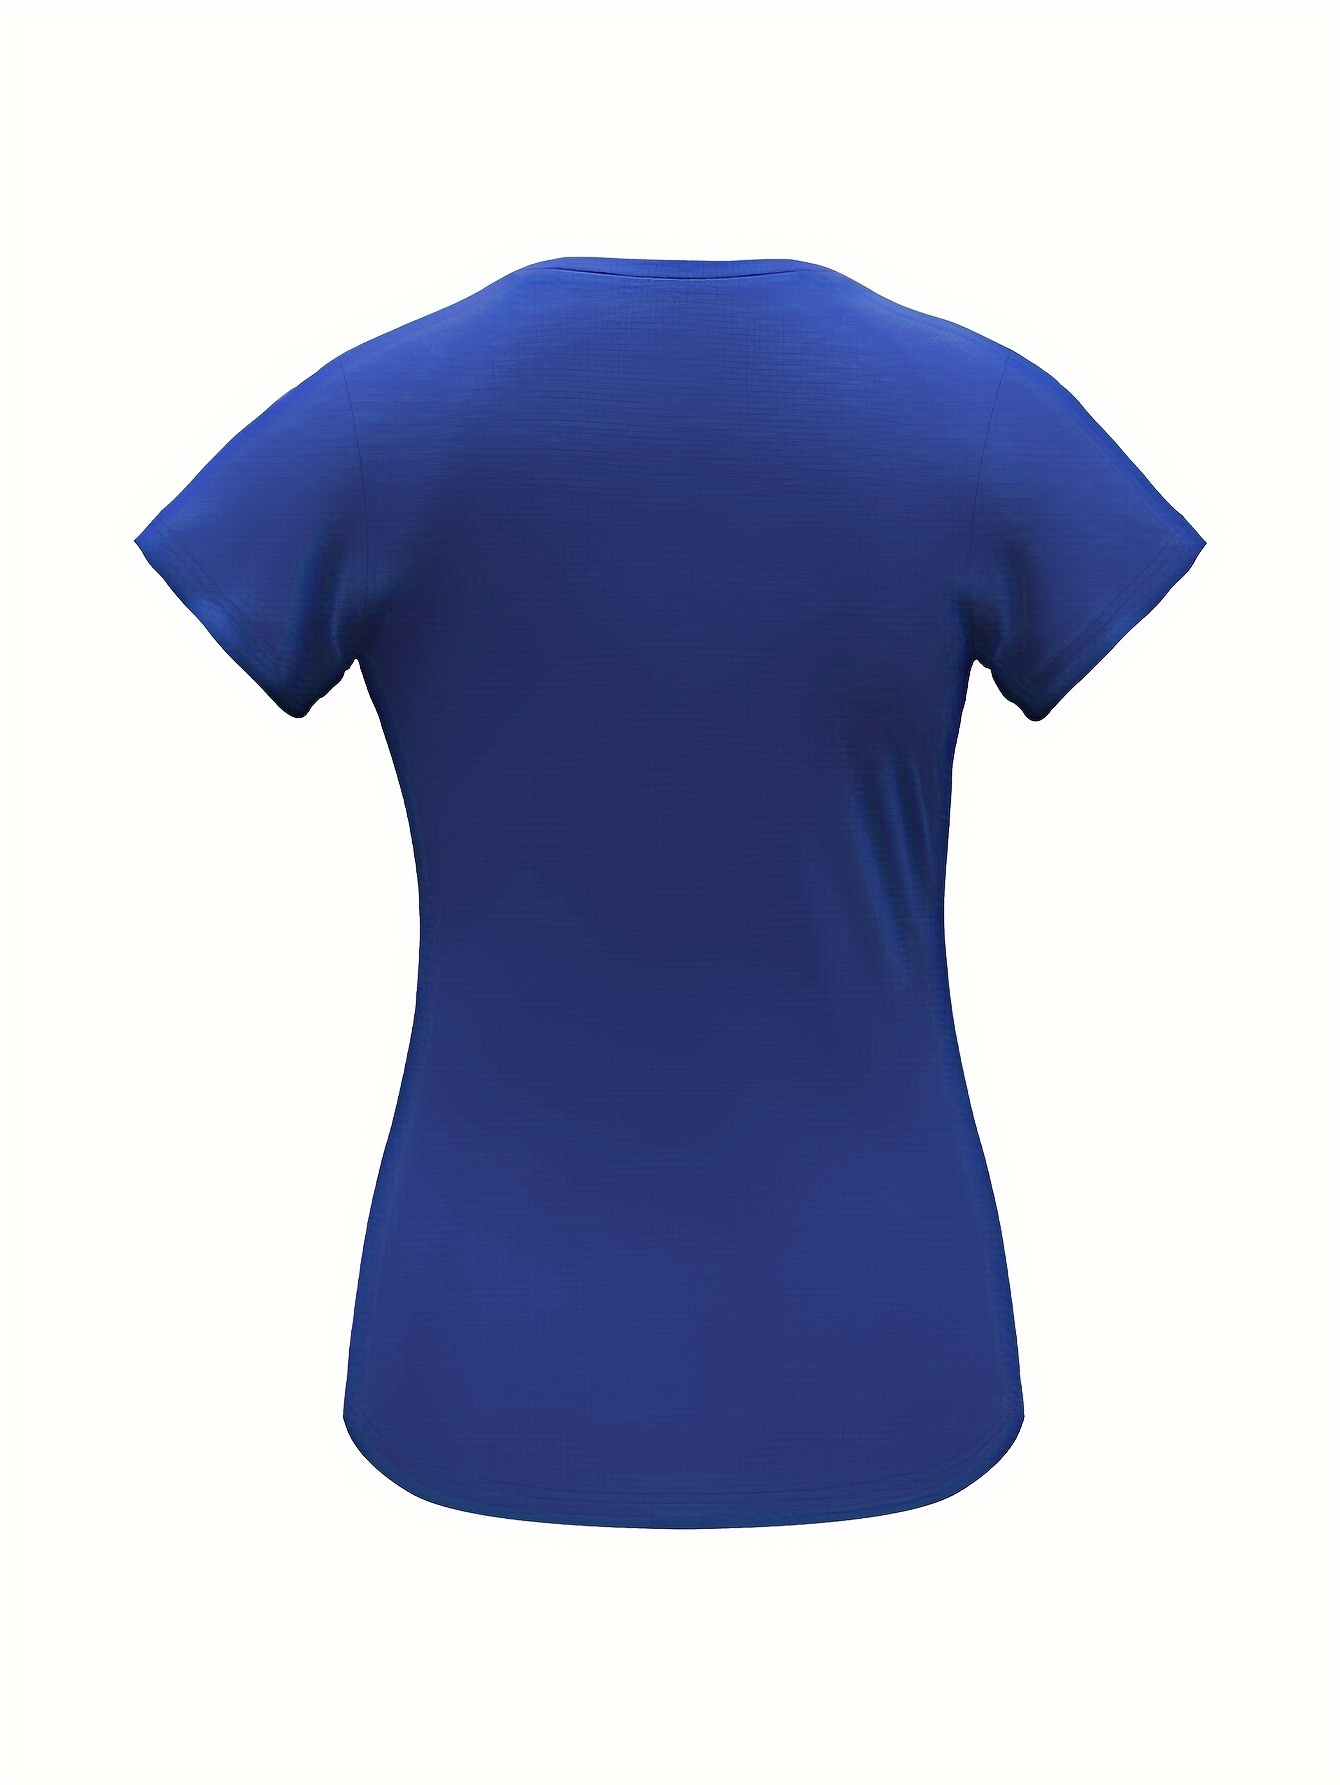 Camiseta Deporte Mujer, Ligera Y Transpirable